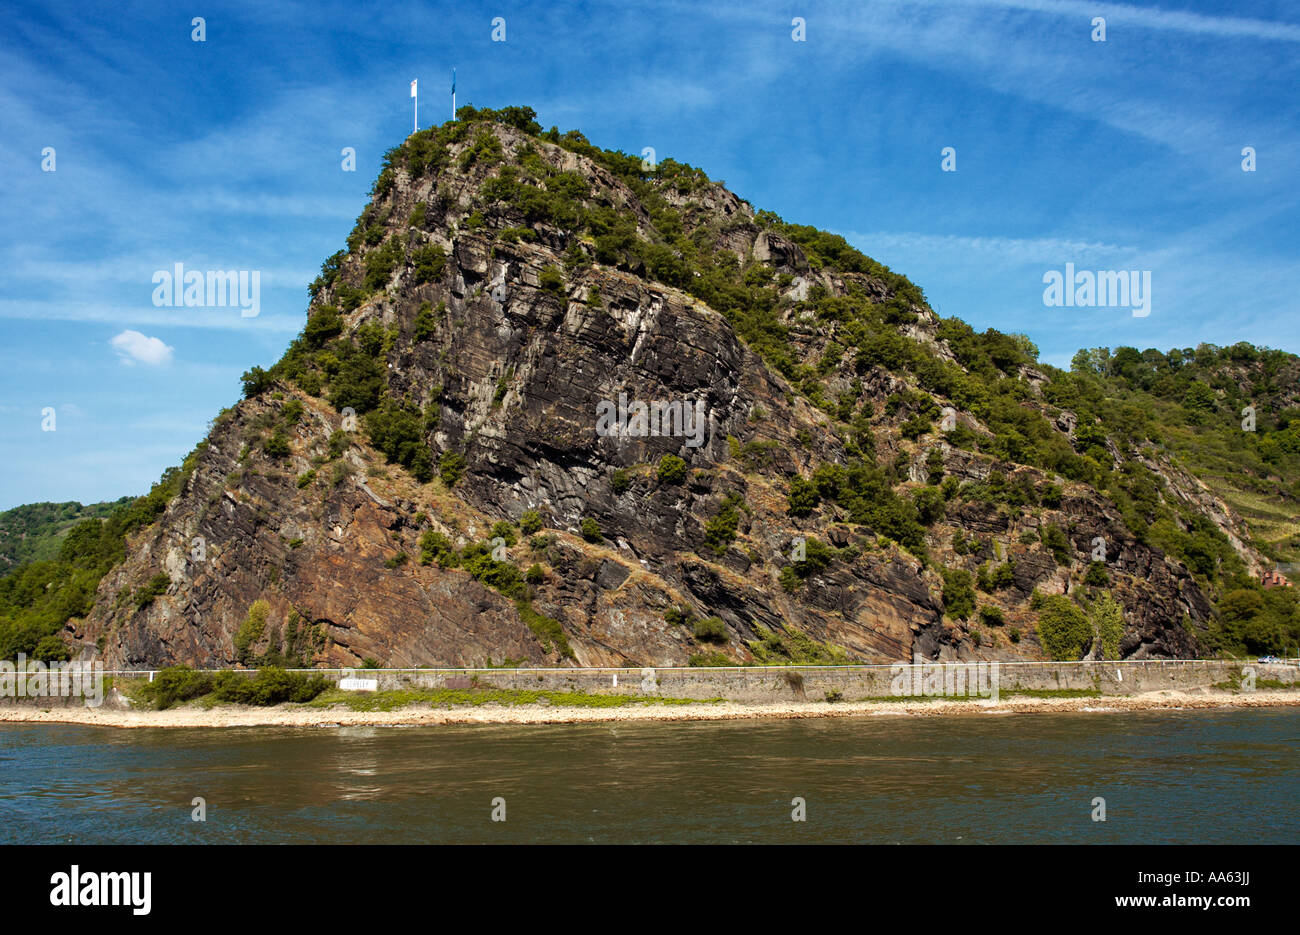 Die Loreley rock in der oberen Mitte River Rheintal, Deutschland, Europa Stockfoto